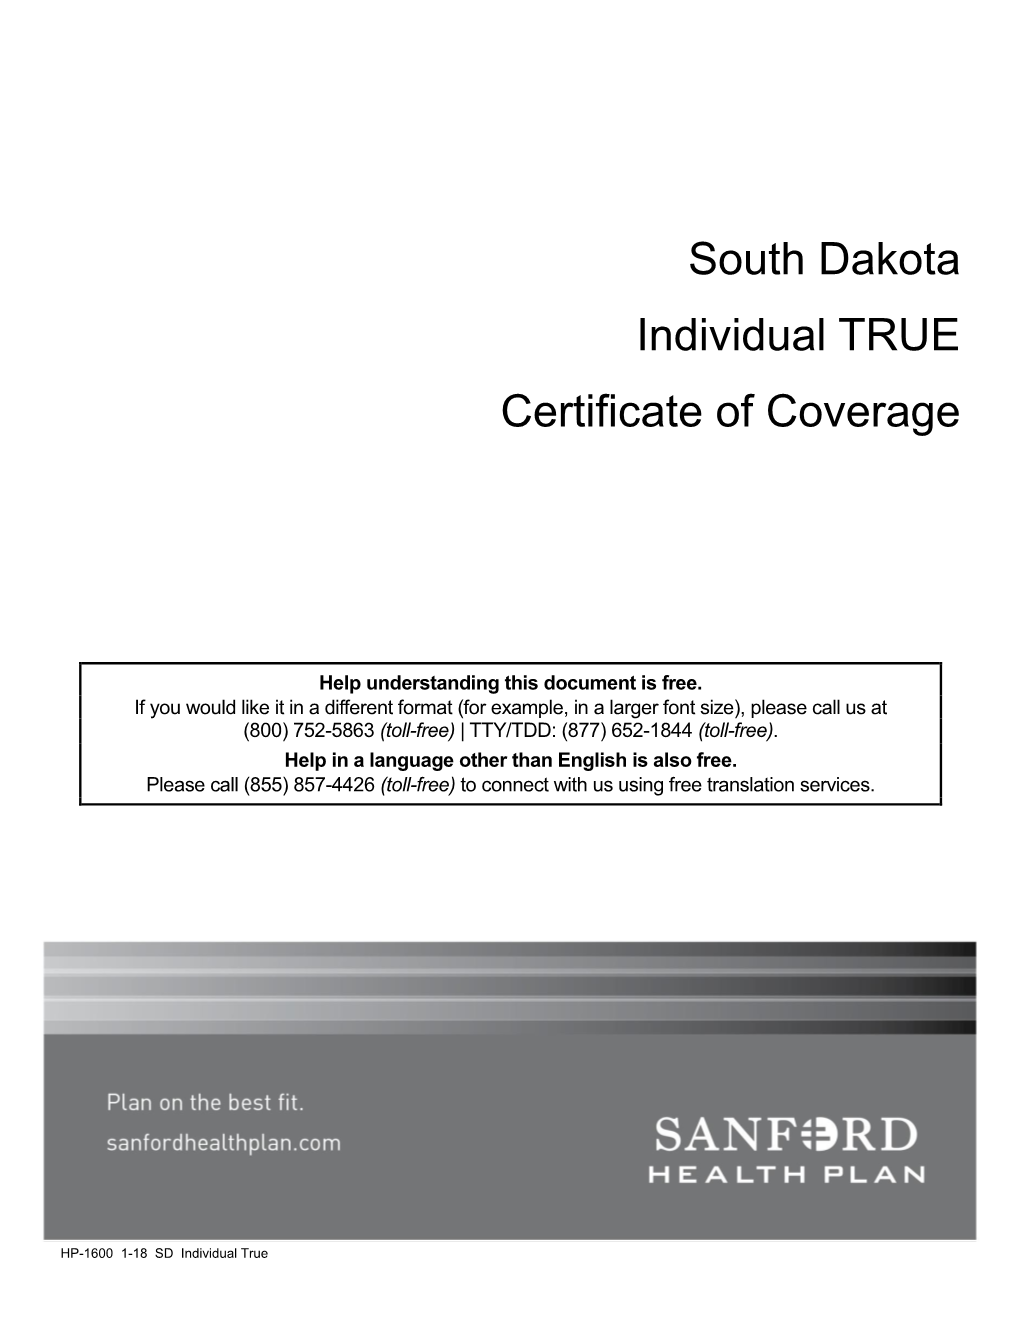 South Dakota Individual TRUE Certificate of Coverage